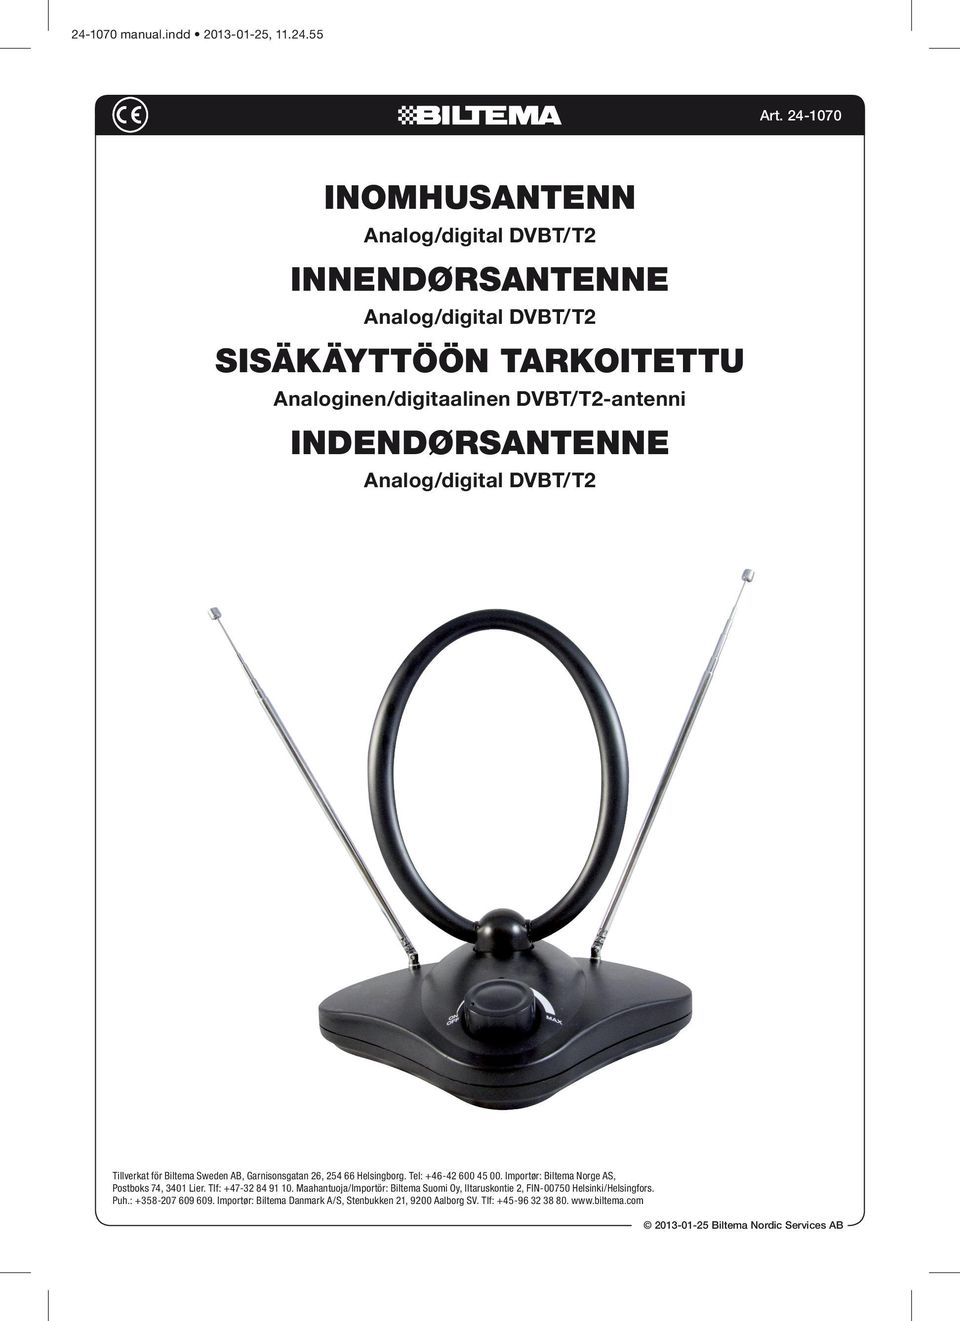 Indendørsantenne Analog/digital DVBT/T2 Tillverkat för Biltema Sweden AB, Garnisonsgatan 26, 254 66 Helsingborg. Tel: +46-42 600 45 00.